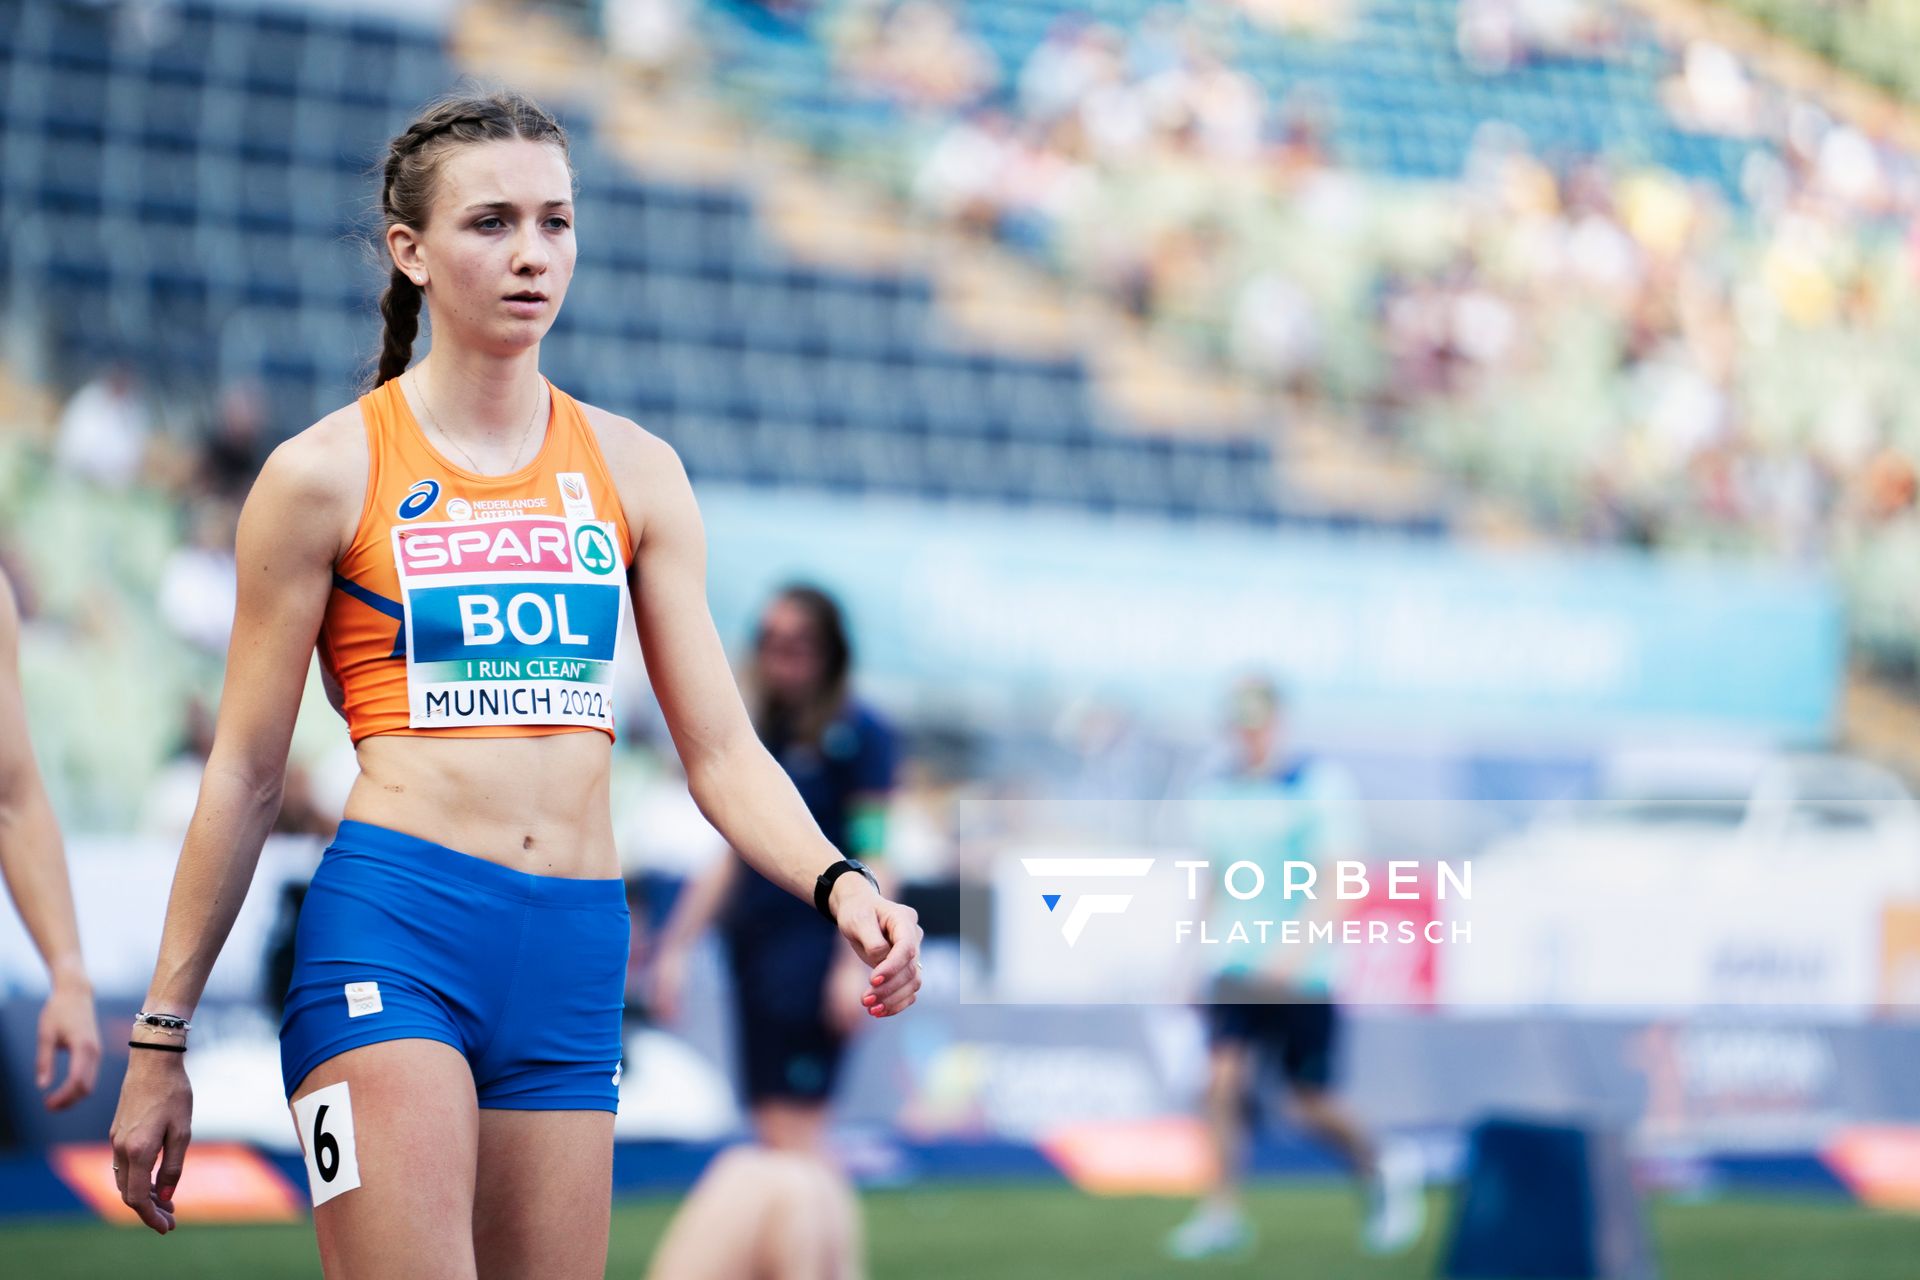 Femke Bol (NED) im 400m Halbfinale am 16.08.2022 bei den Leichtathletik-Europameisterschaften in Muenchen